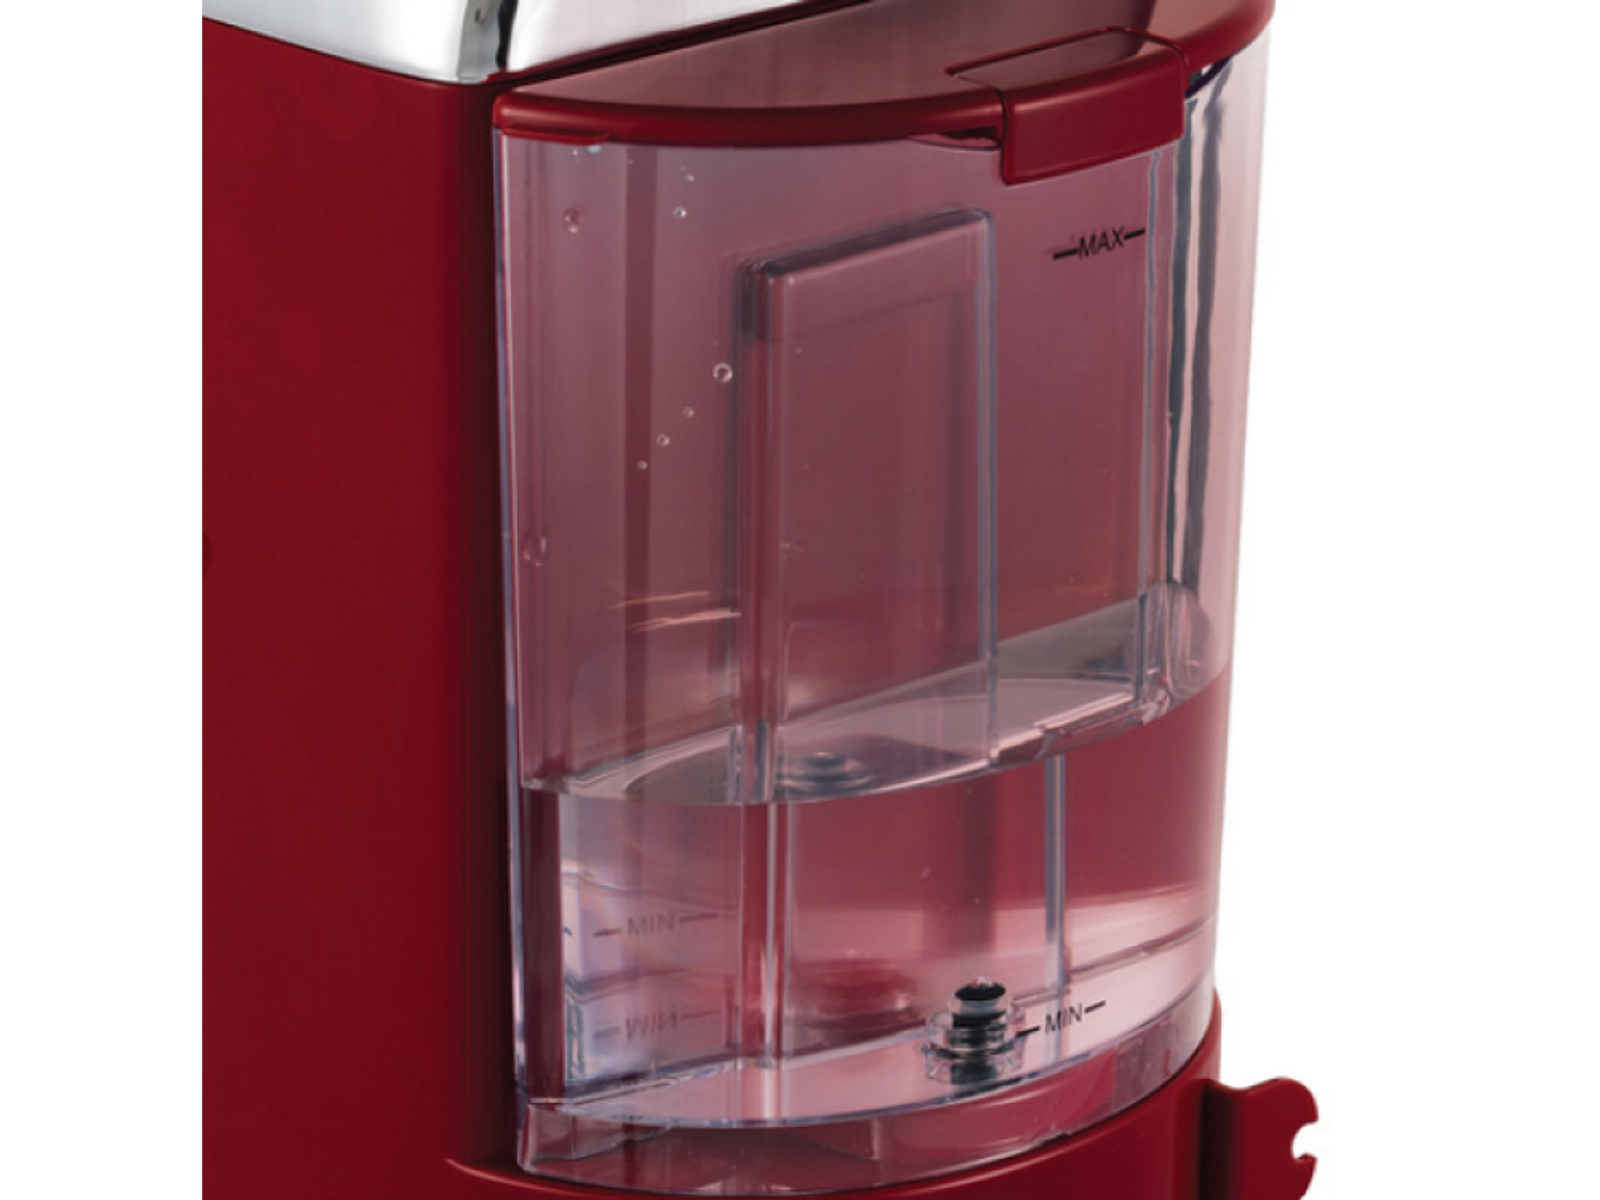 Retro rot RUSSELL Espressomaschine HOBBS Siebträger Espressomaschine